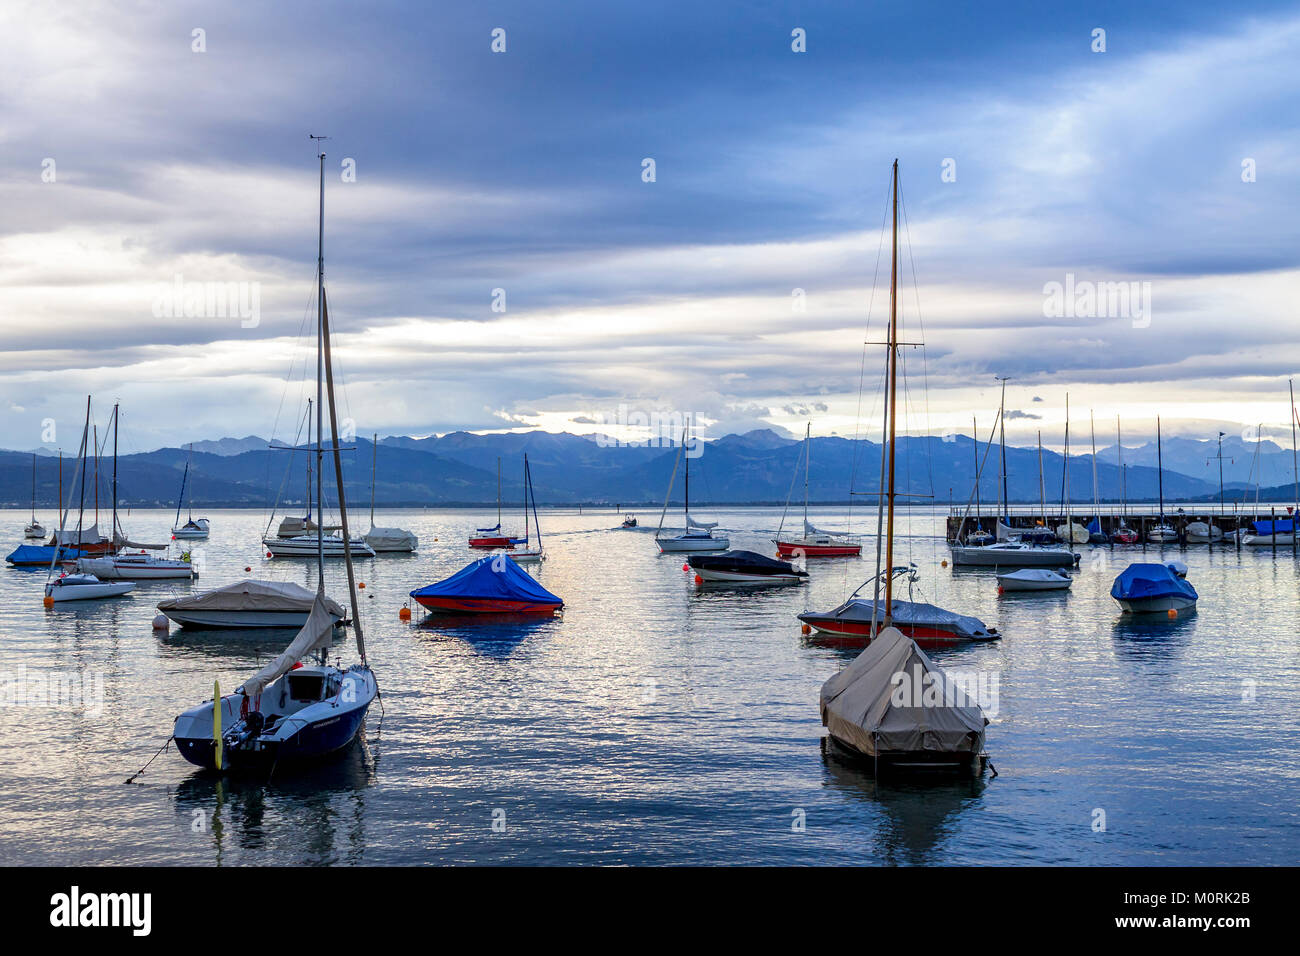 Germania Baden-Wuerttemberg, Lago di Costanza, Wasserburg, porto con barche a vela di sera Foto Stock